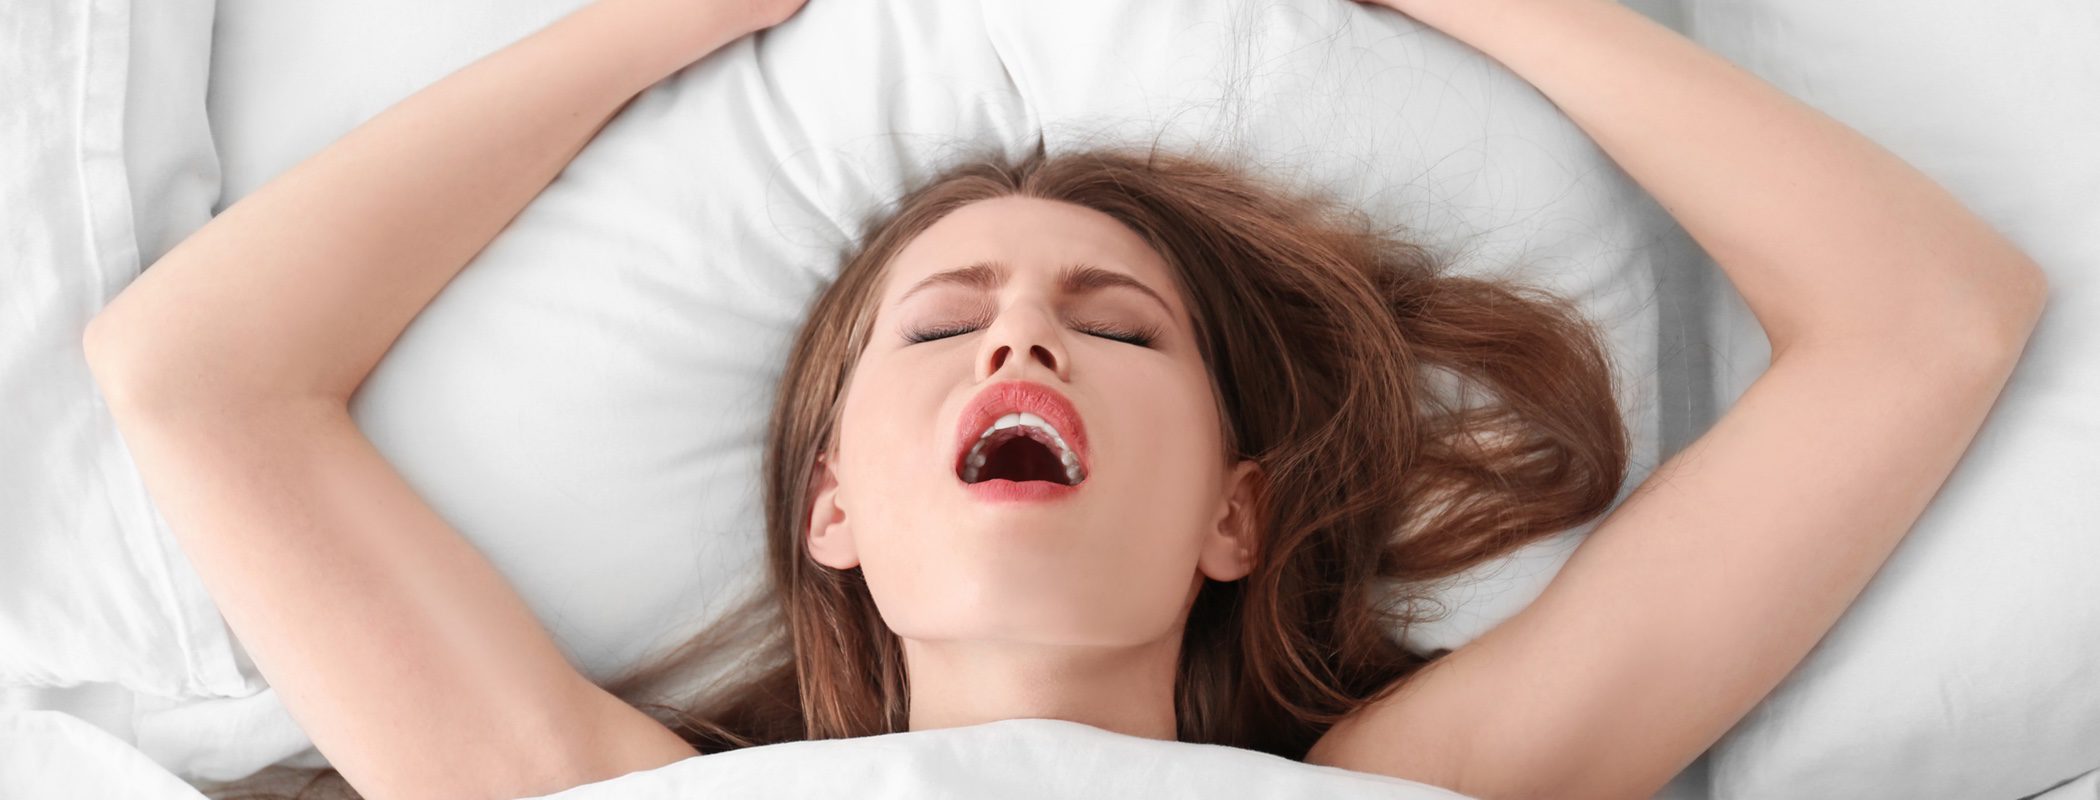 Пышногрудая красотка страстно мастурбирует в постели до экстаза